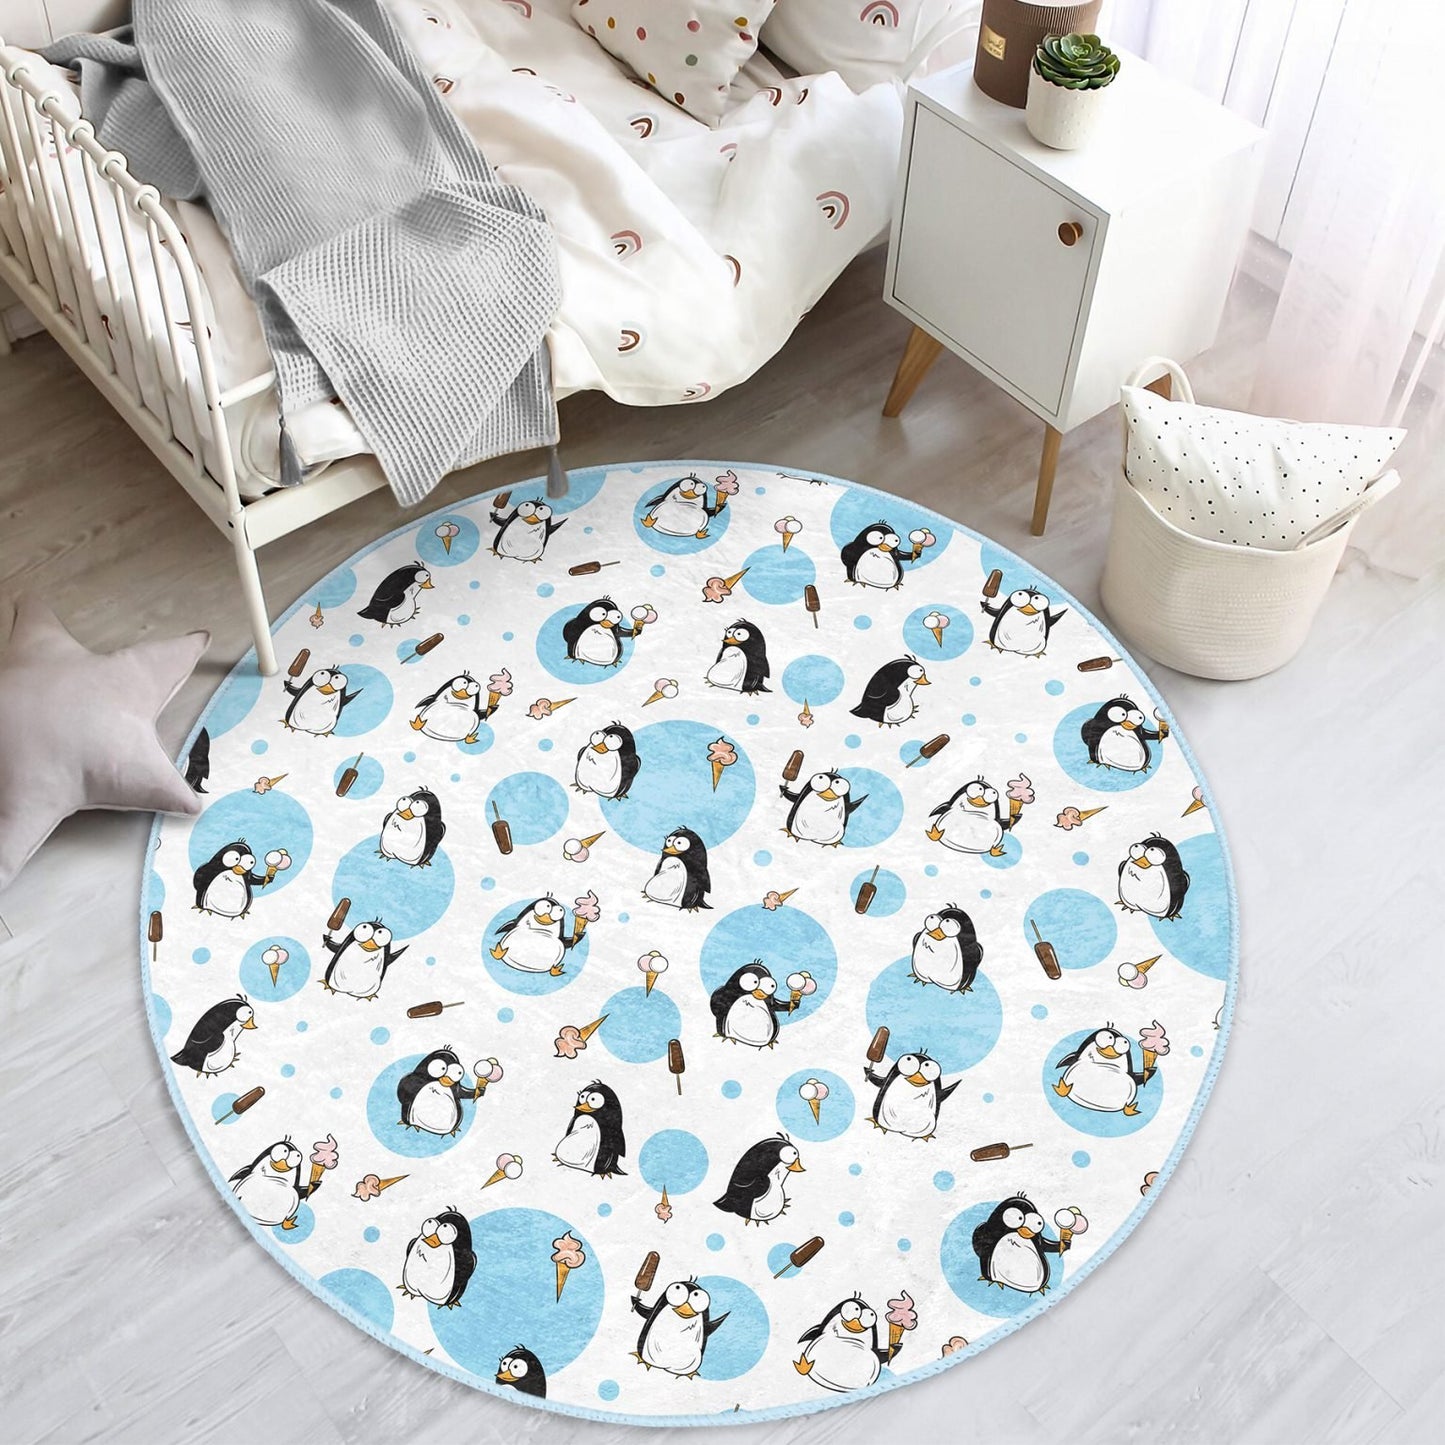 Homeezone's Baby Penguins Printed Kids Room Floor Covering